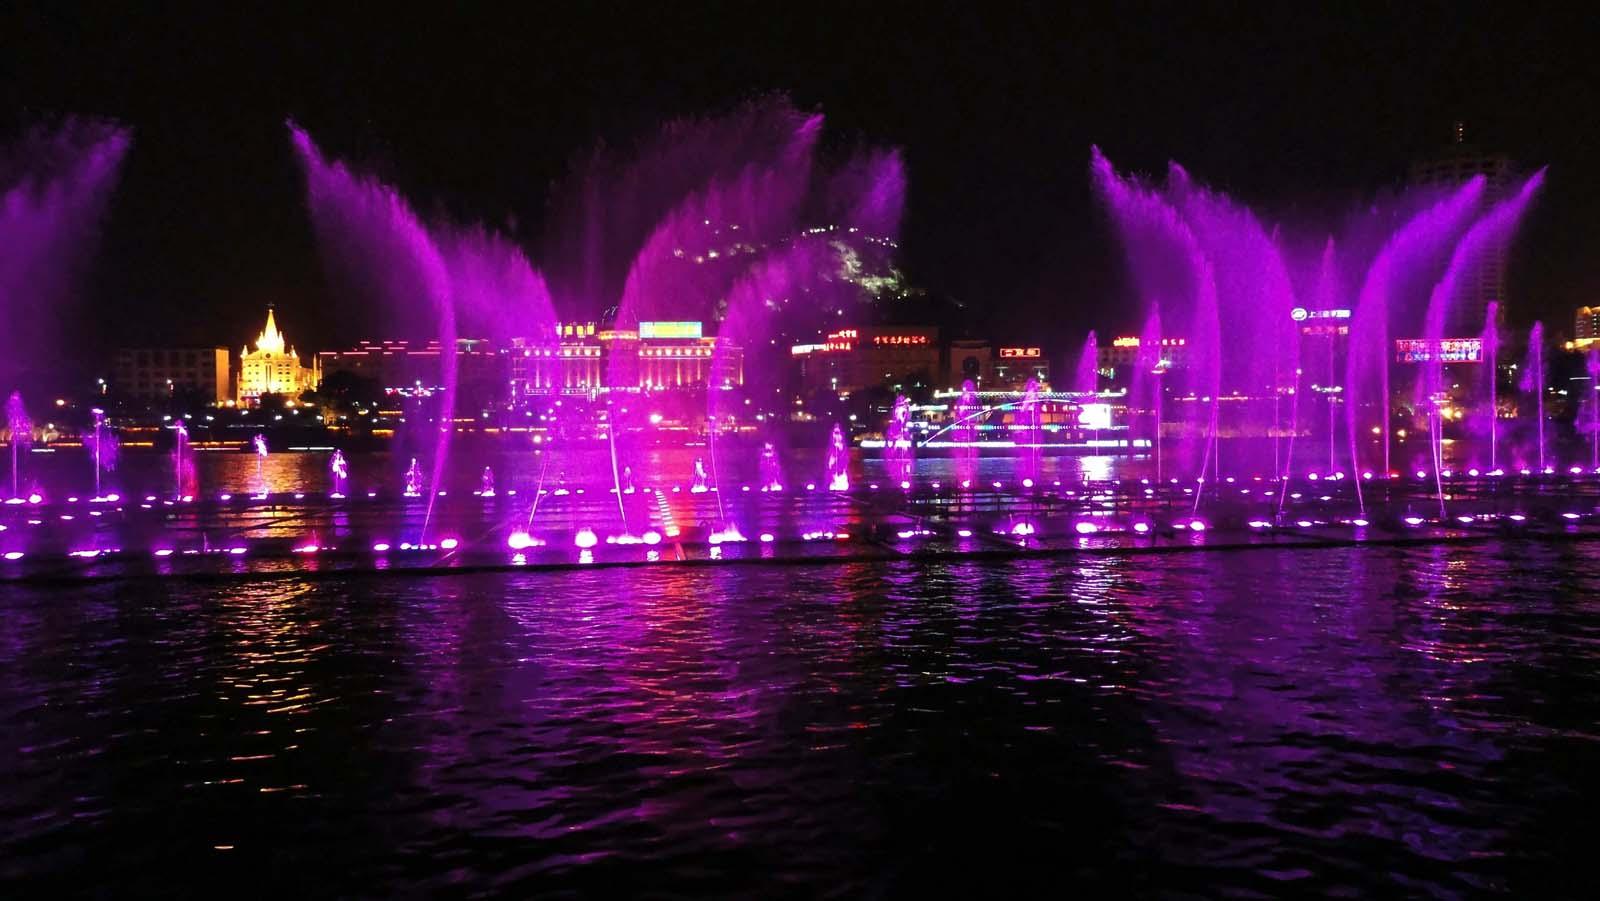 杜拜音樂噴泉